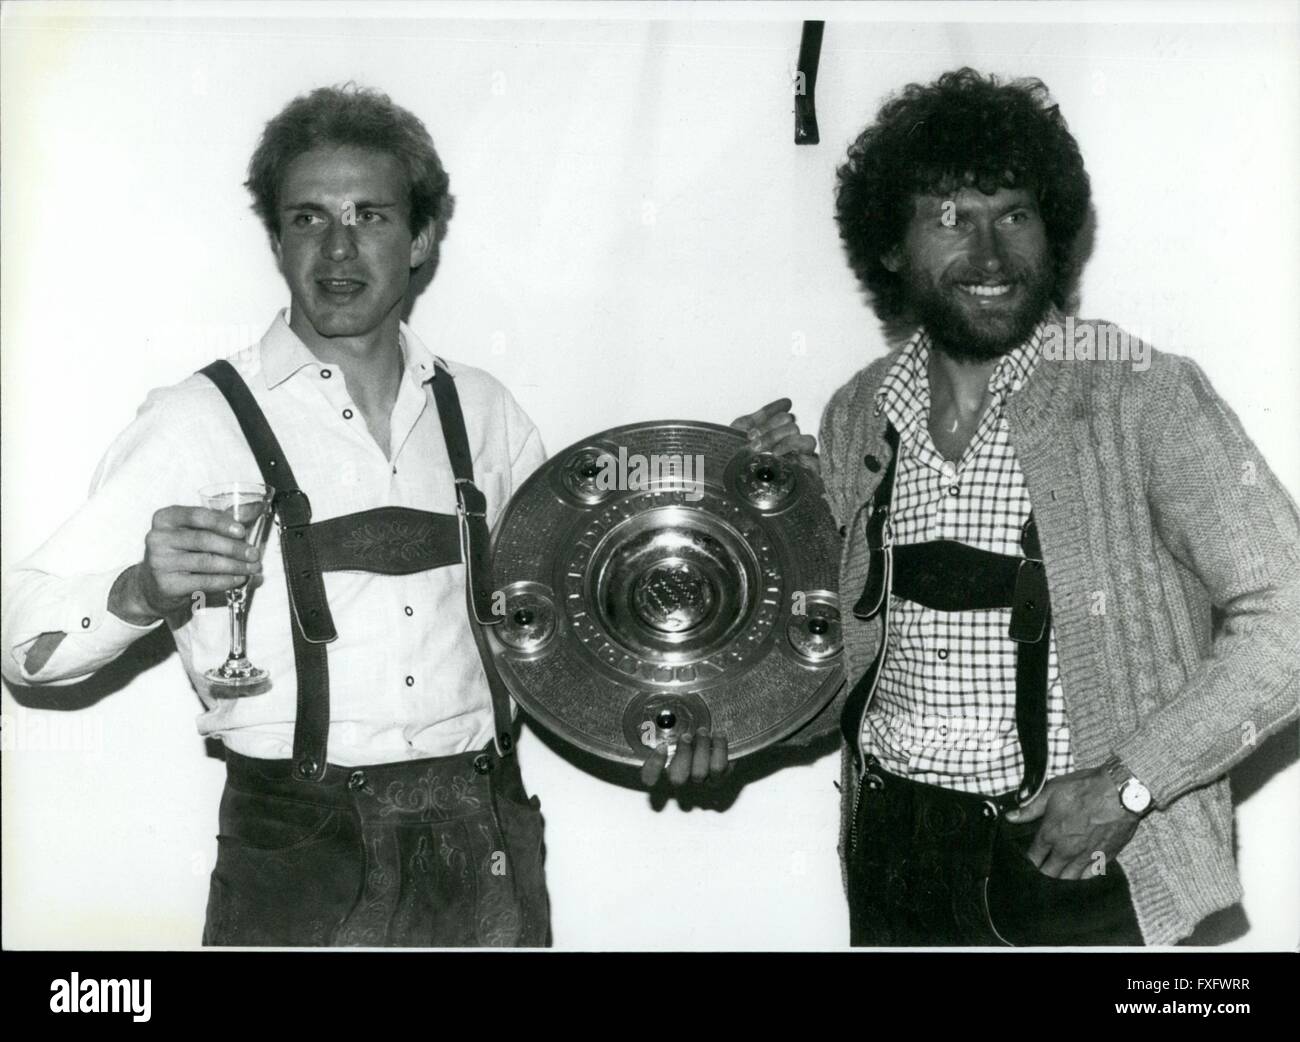 1980 - Jubilation et la turbulence entouré le nouveau champion allemand de football FC Bayern Muchen : Première environ 73 000 visiteurs ont célébré avec enthousiasme l'équipe après la victoire 2:1 sur l'Eintracht b raunschweig dans le dernier match de la saison de Bundesliga. Alors à samedi soir 31 mai, 1980 10 000 fans sont venus à la Marienplatz de Munich/Allemagne de l'Ouest en face de l'hôtel de ville pour donner aux joueurs une sensation de bienvenue. Le maire de Munich présente le capitaine de l'équipe de football du FC Bayern Munchen une grande tasse. Le trophée officiel du championnat allemand de football, la calle Banque D'Images